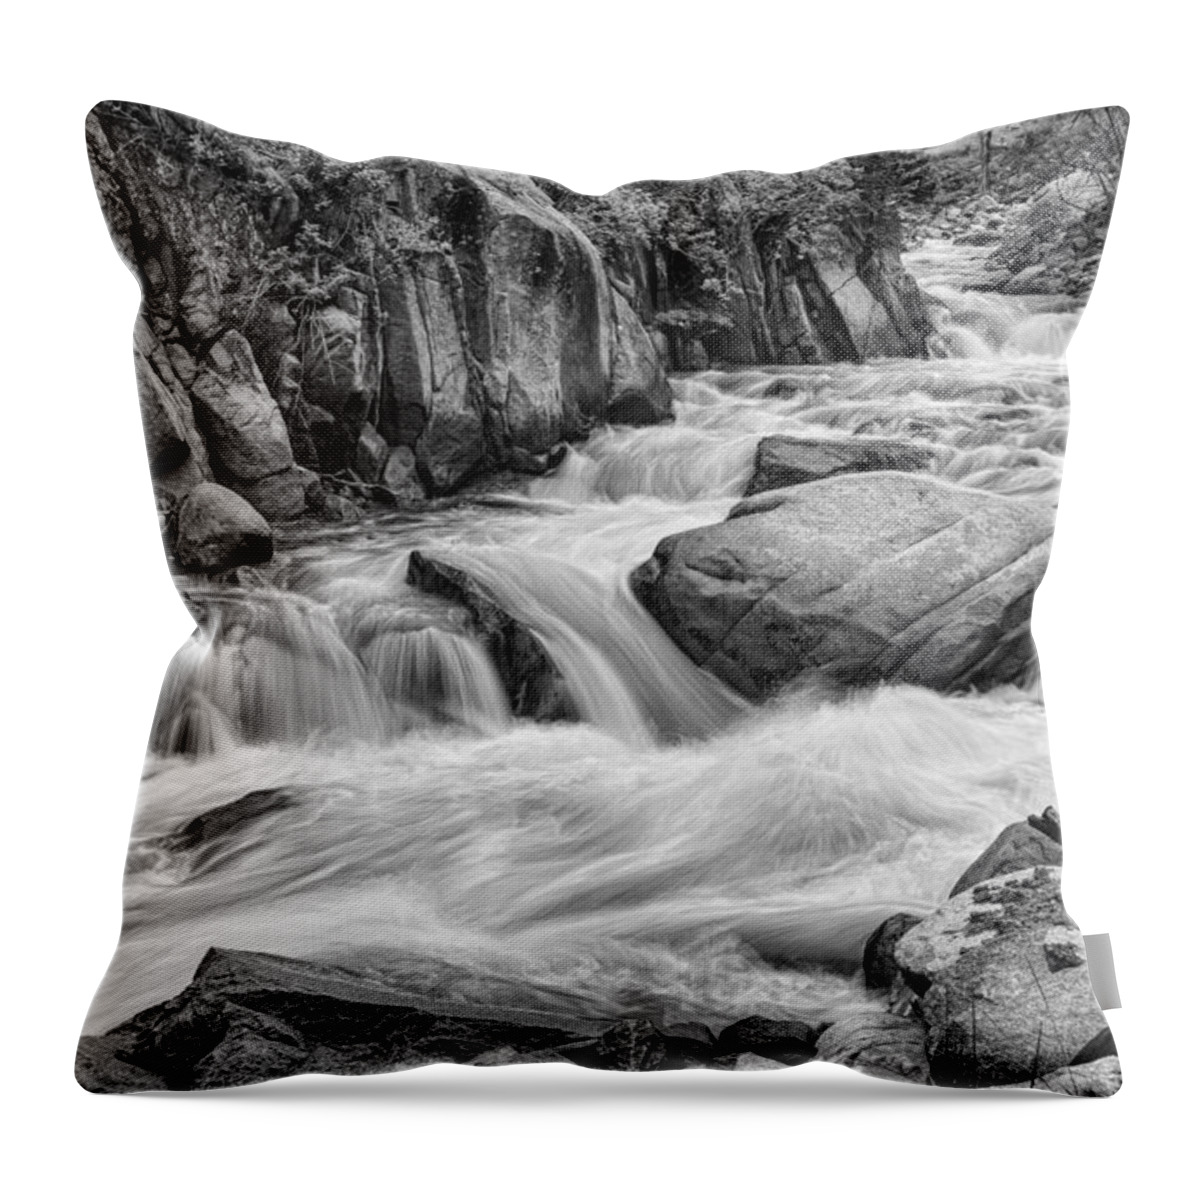 Mountain Throw Pillow featuring the photograph Cascading Colorado Rocky Mountain Stream BW by James BO Insogna